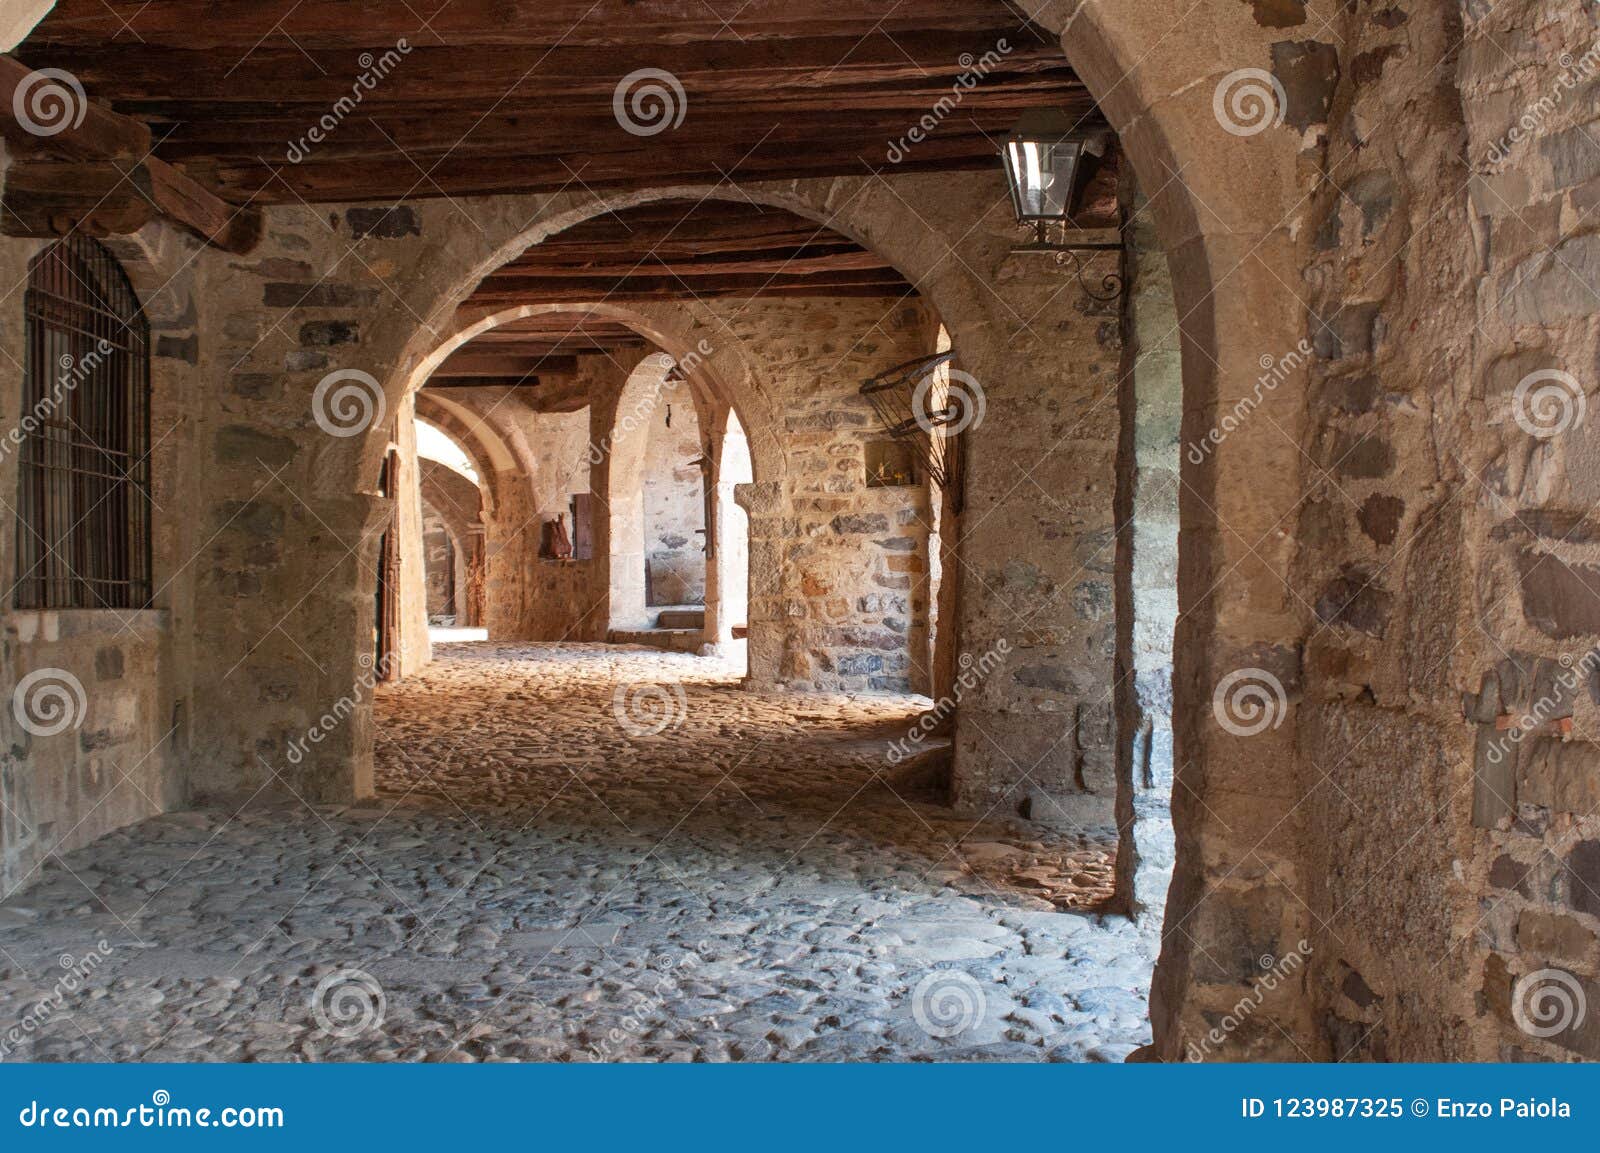 porticos along via mercatorum, cornello dei tasso, ancient medieval village, camerata cornello, lombardy, italy